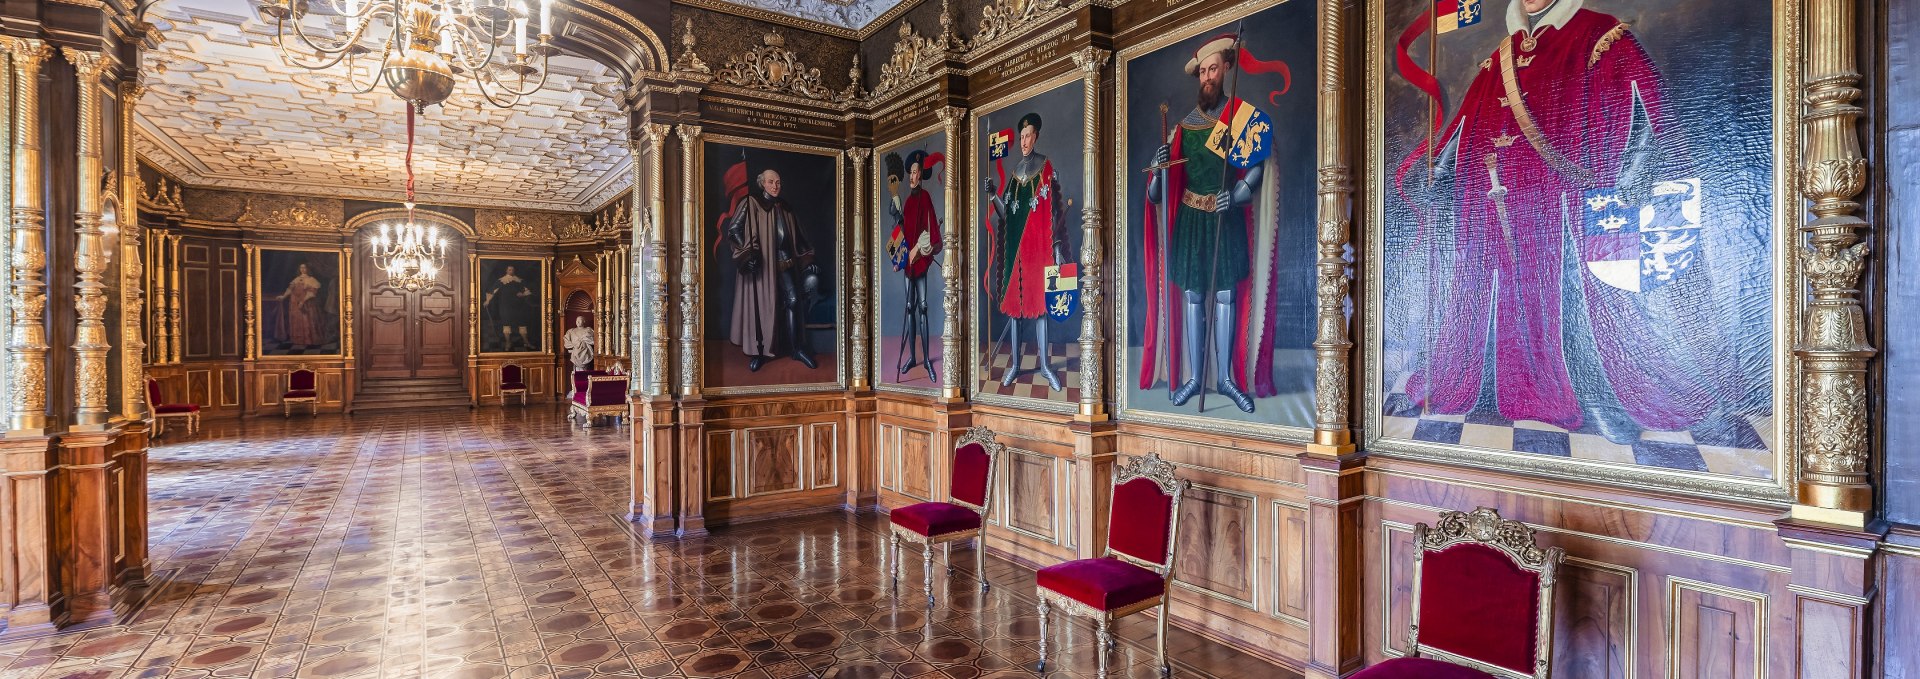 Ancestral Hall at Schwerin Castle, © Timm Allrich  ©Staatliche Schlösser Gärten und Kunstsammlungen M-V